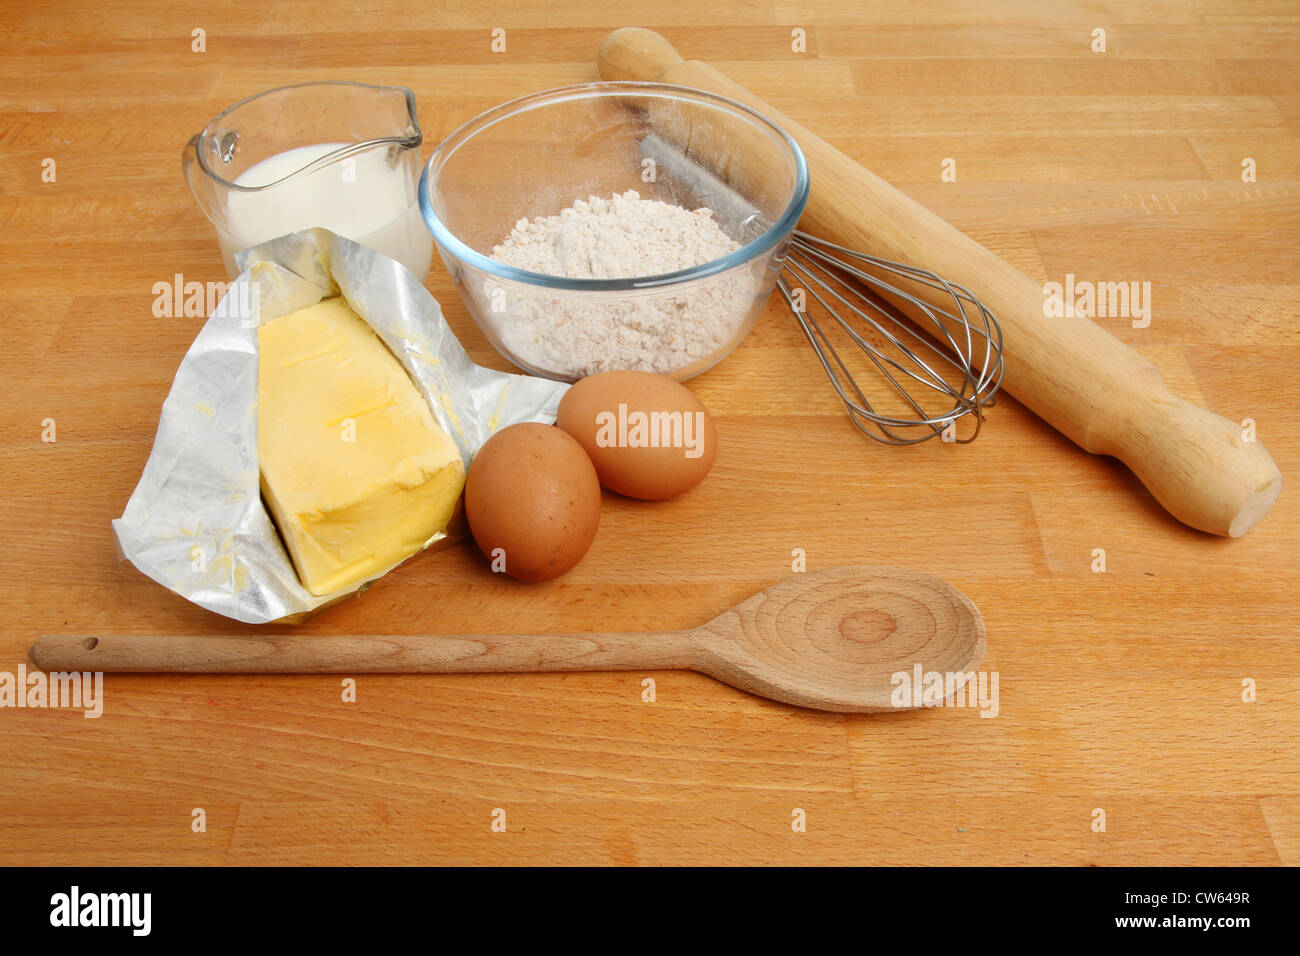 Ingrédients de cuisson, farine, œufs, lait et la margarine à l'aide d'un fouet, cuillère en bois et un rouleau à pâtisserie sur un plan de travail en bois Banque D'Images